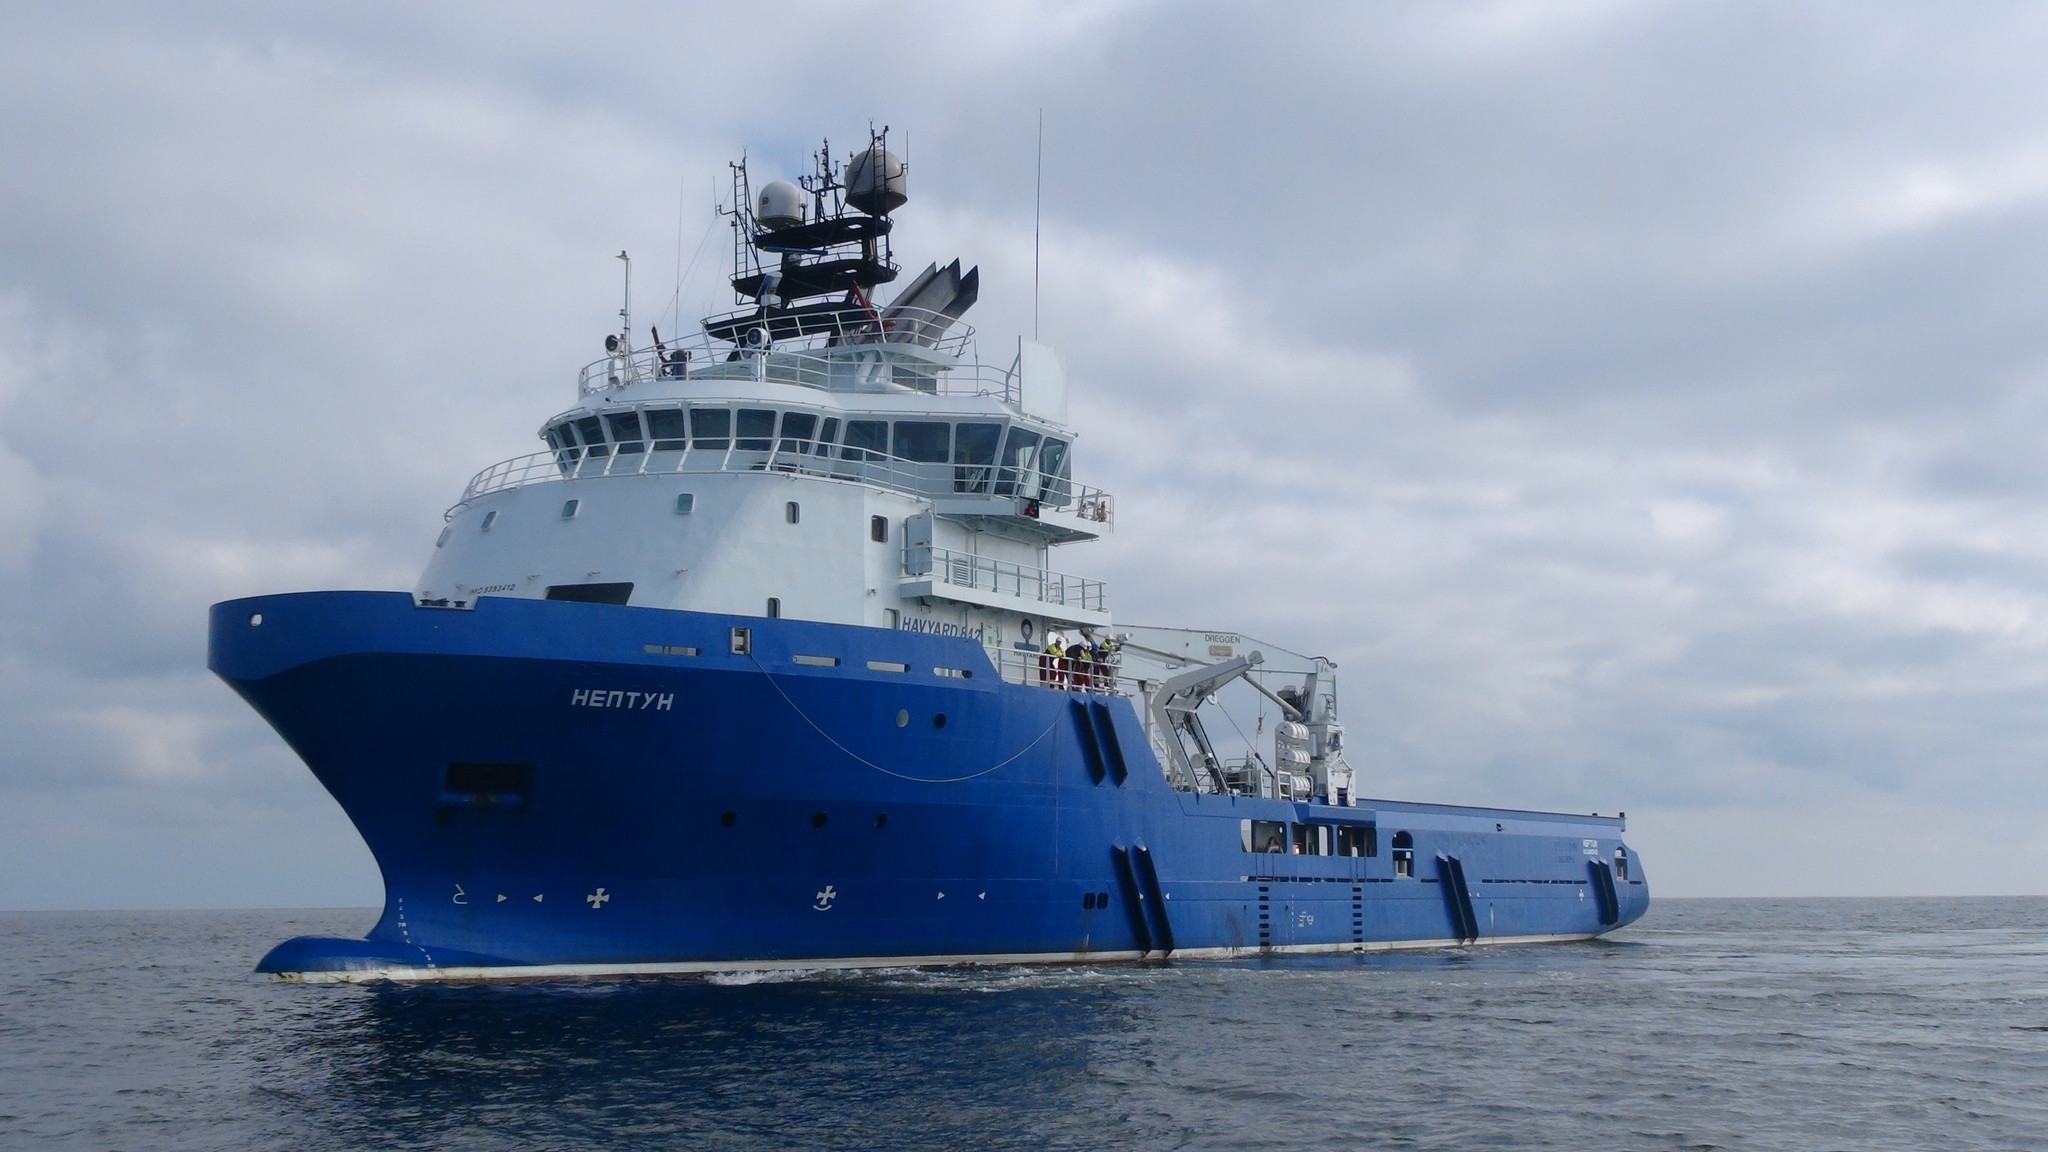 "Подарок" от друга: Китай отказался закончить ремонт судна РФ "Нептун", сославшись на санкции